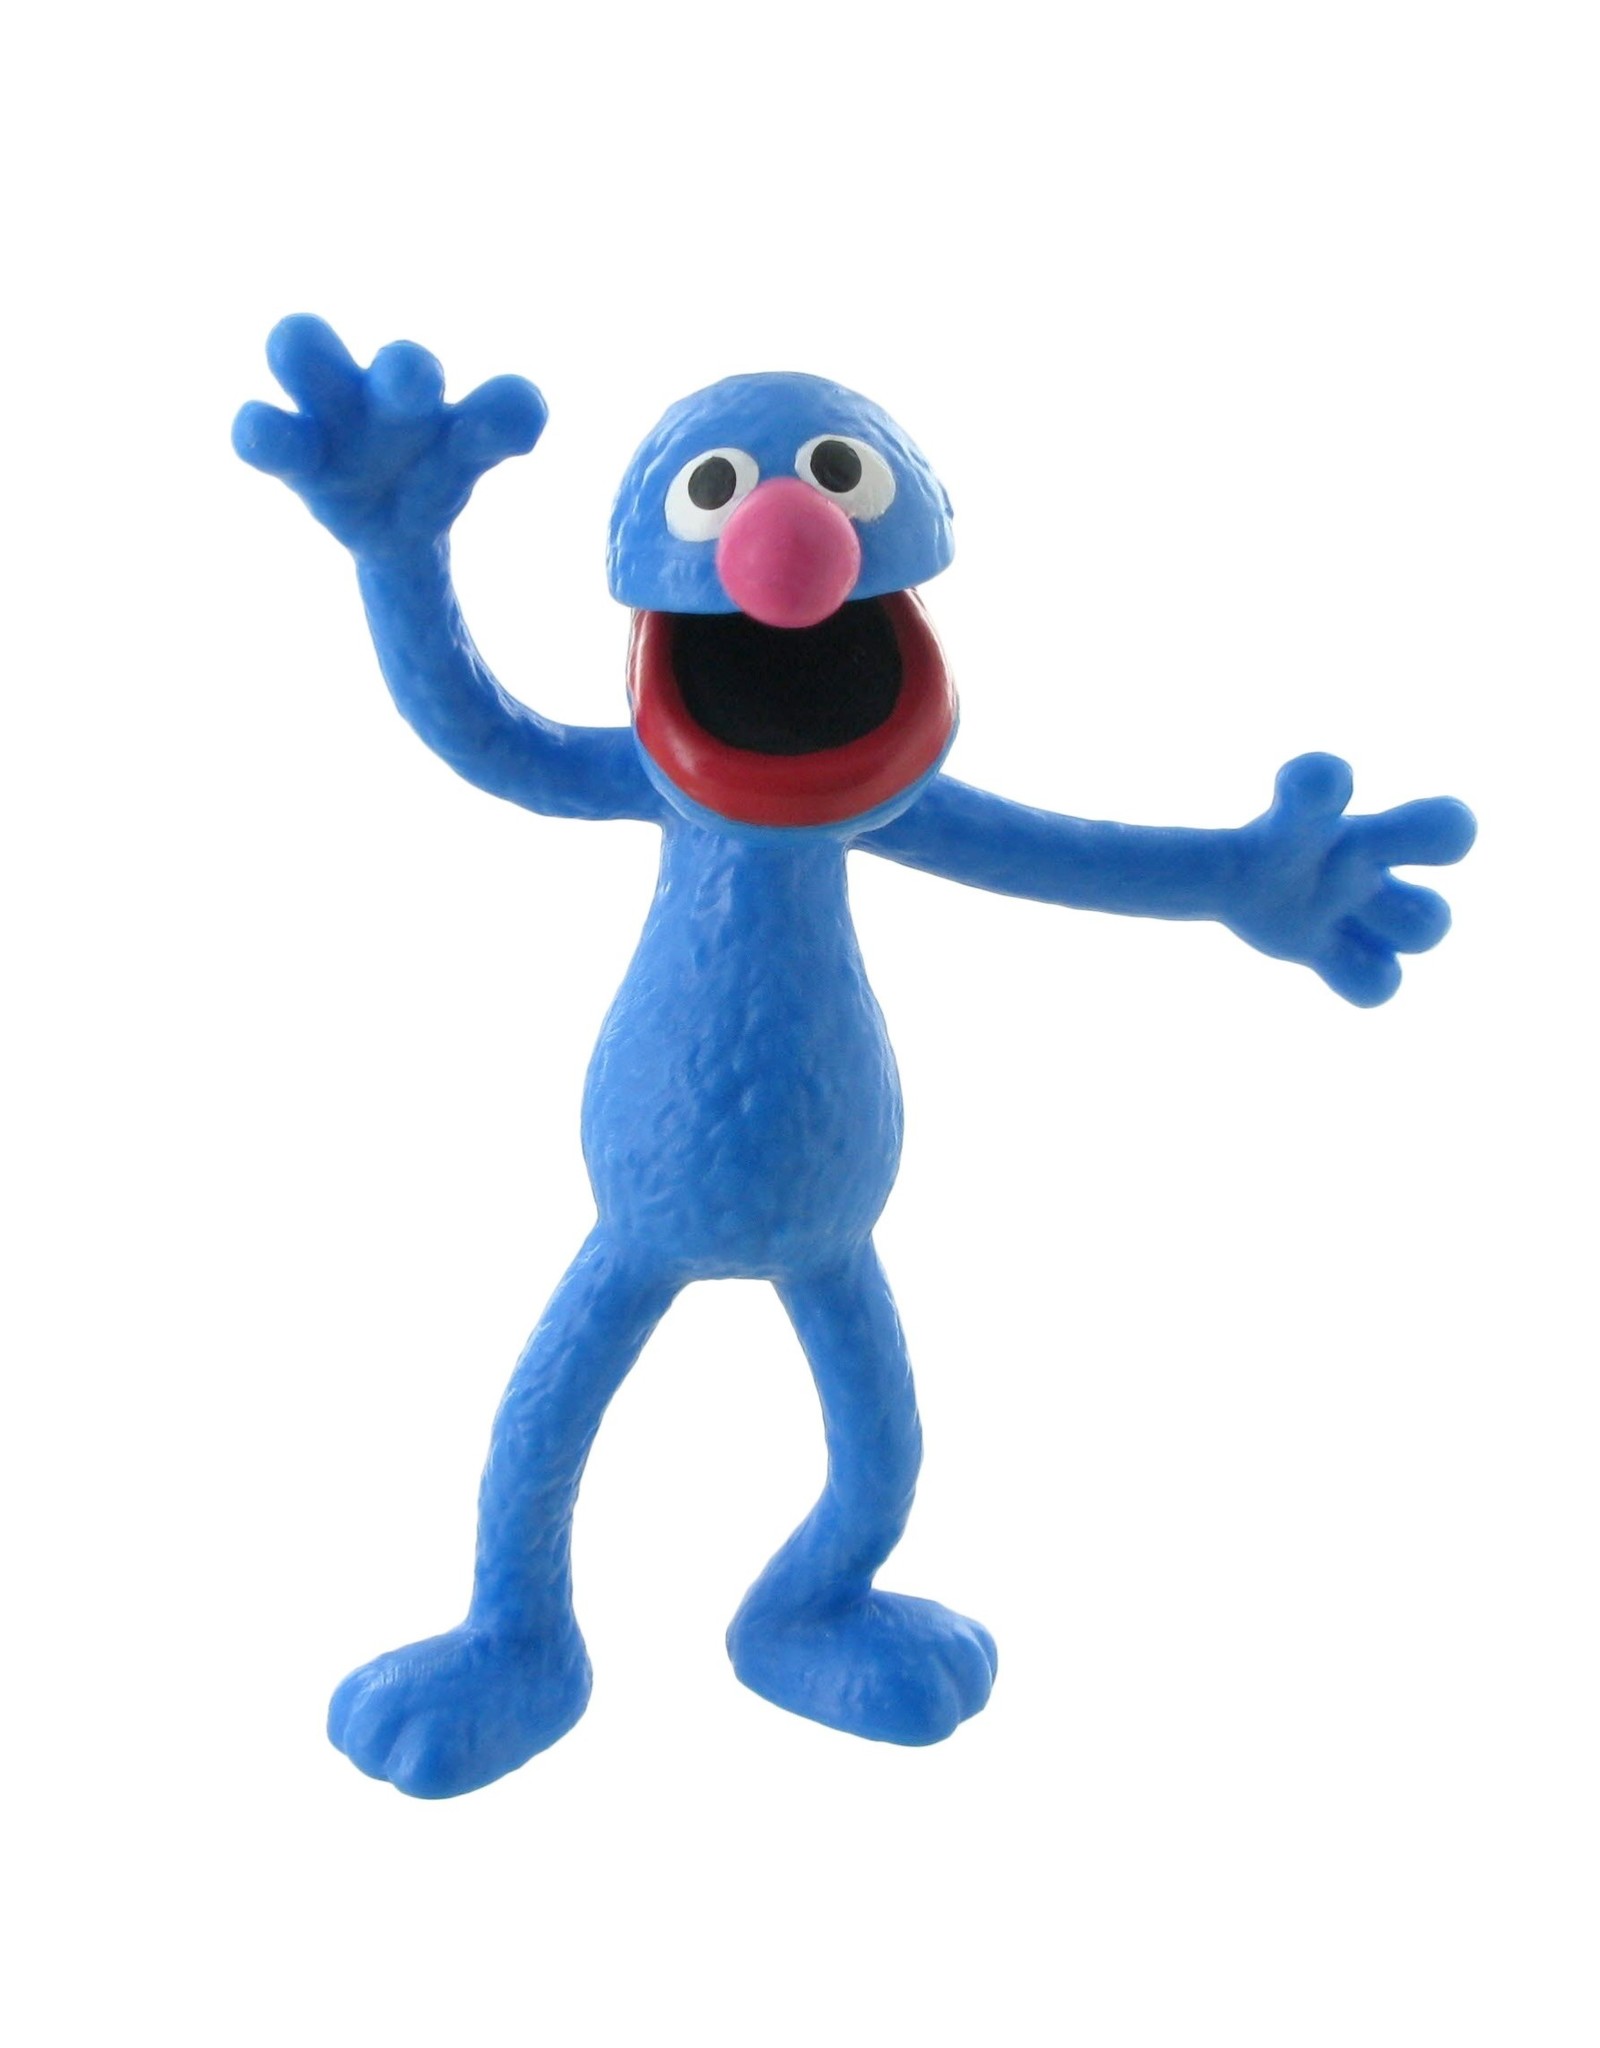 Sesamstraat Grover